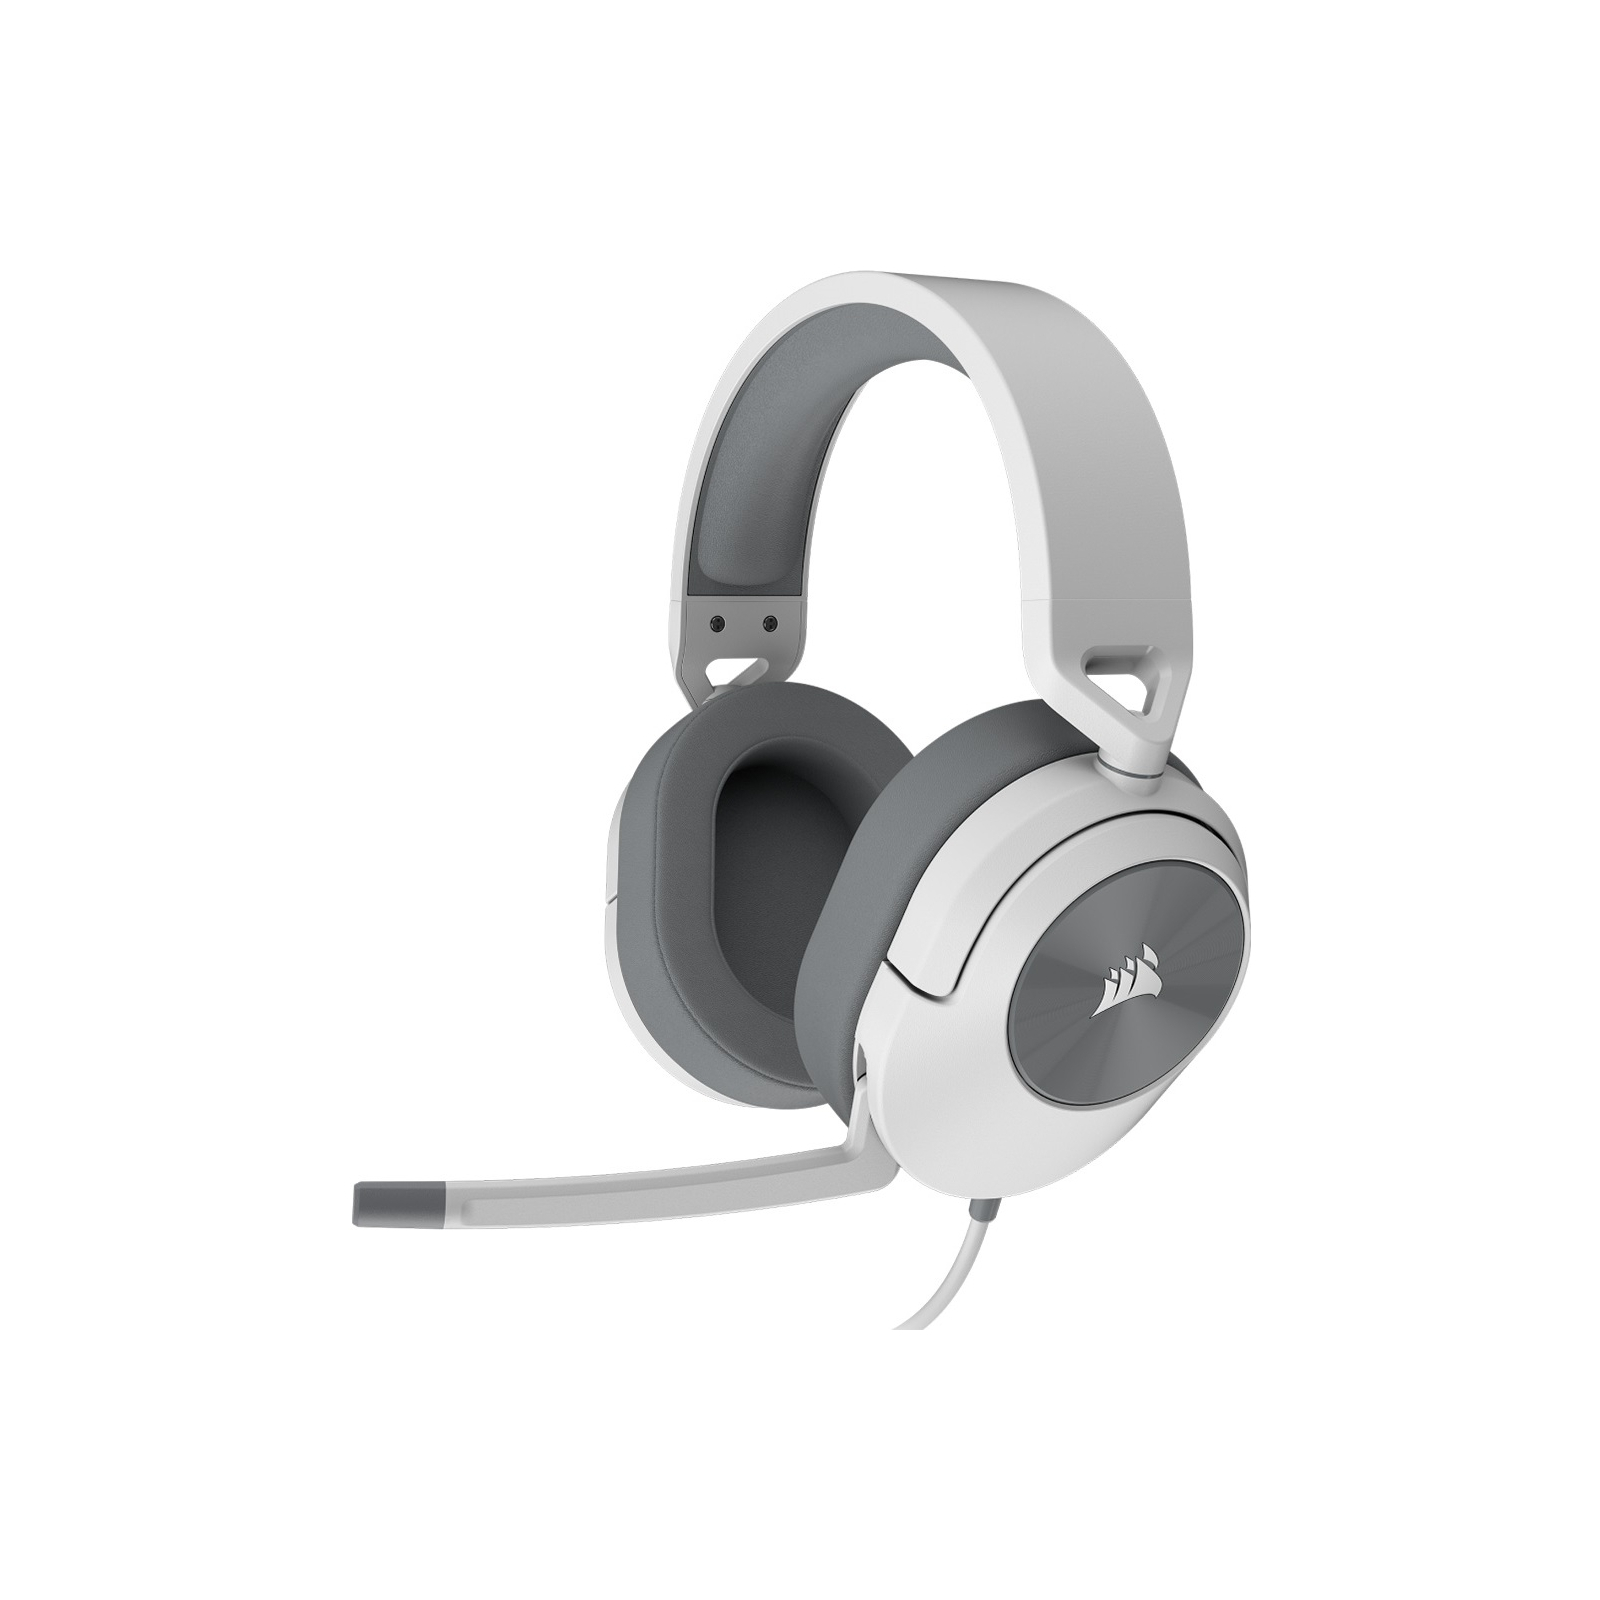 Наушники Corsair HS55 Stereo Headset White (CA-9011261-EU) изображение 2